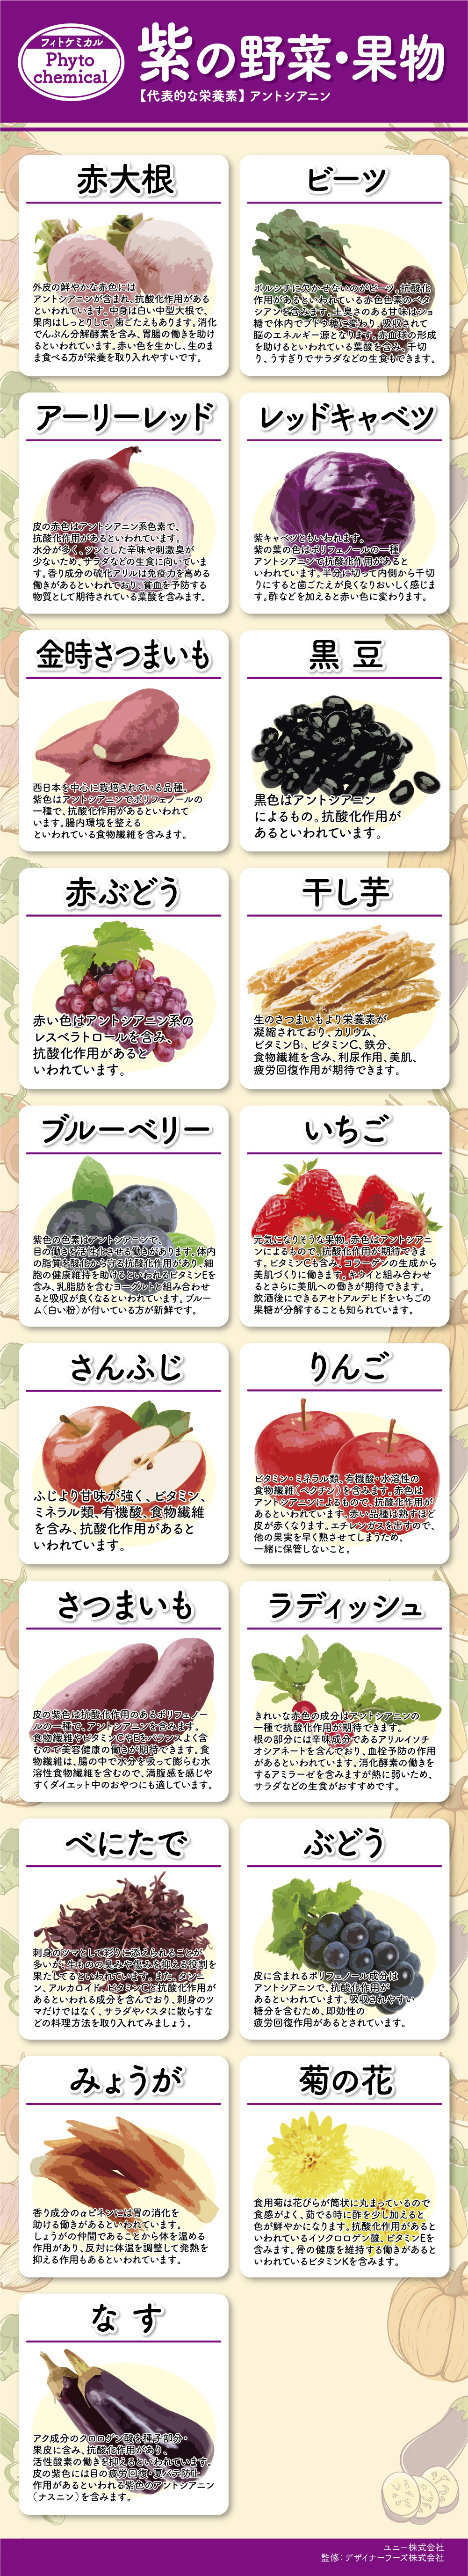 紫の野菜 果物 フィトケミカル